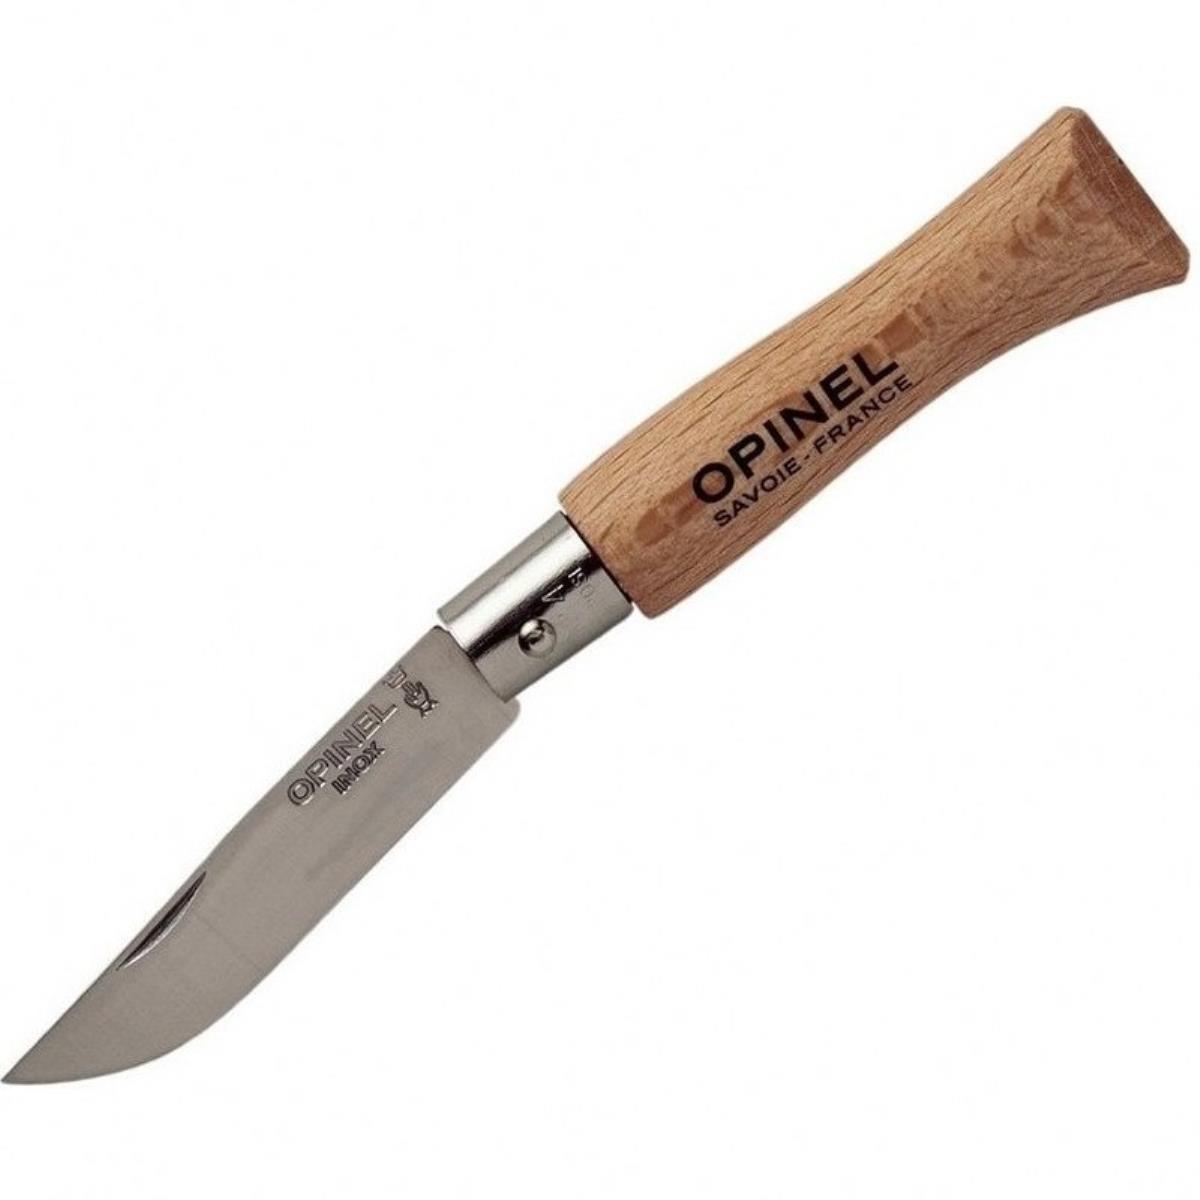 Нож №4 VRI Tradition Inox (нерж. сталь, рукоять бук, длина клинка 5 см) (1210401) OPINEL нож складной серая рукоять g10 сталь aus 8 bk01bo424 strike coyote boker